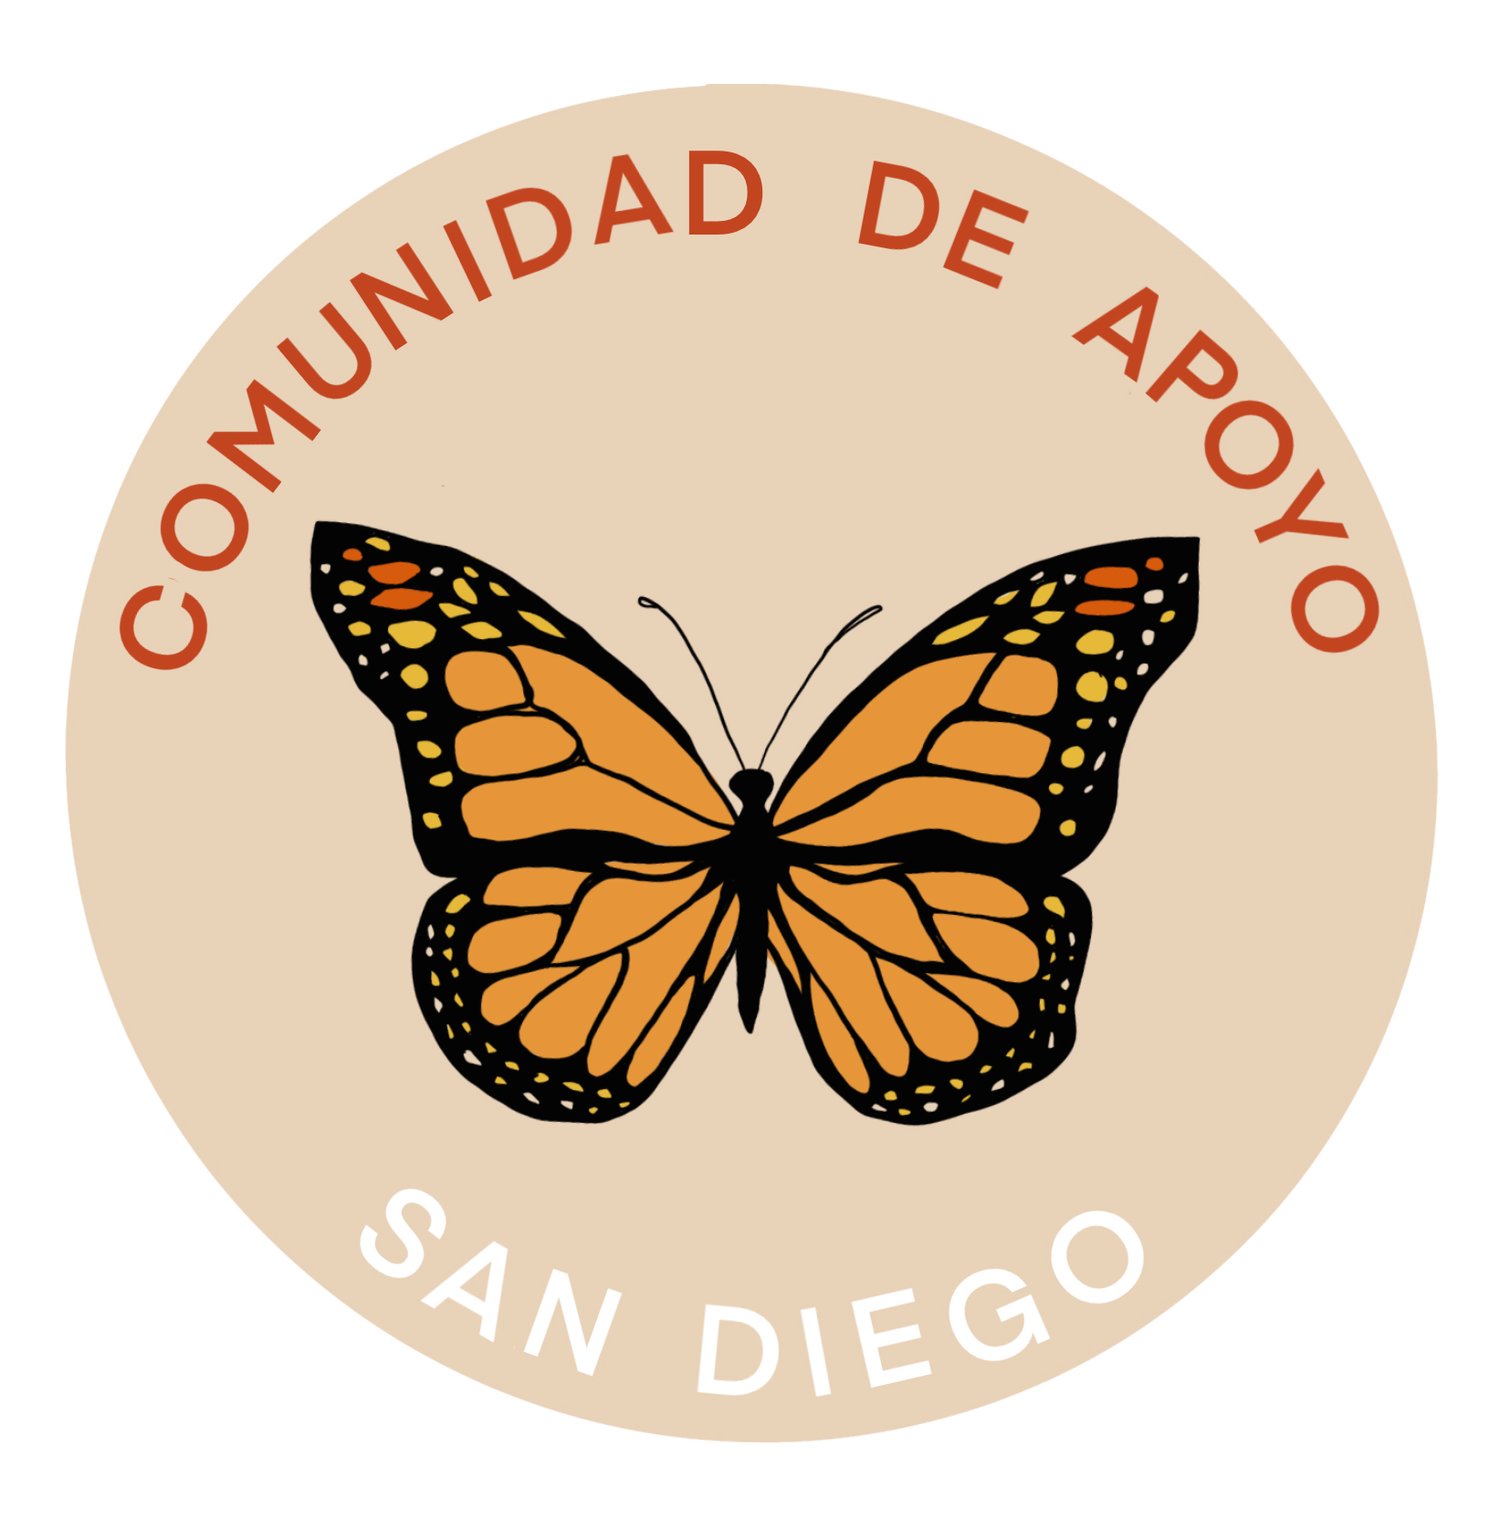 Comunidad de Apoyo San Diego